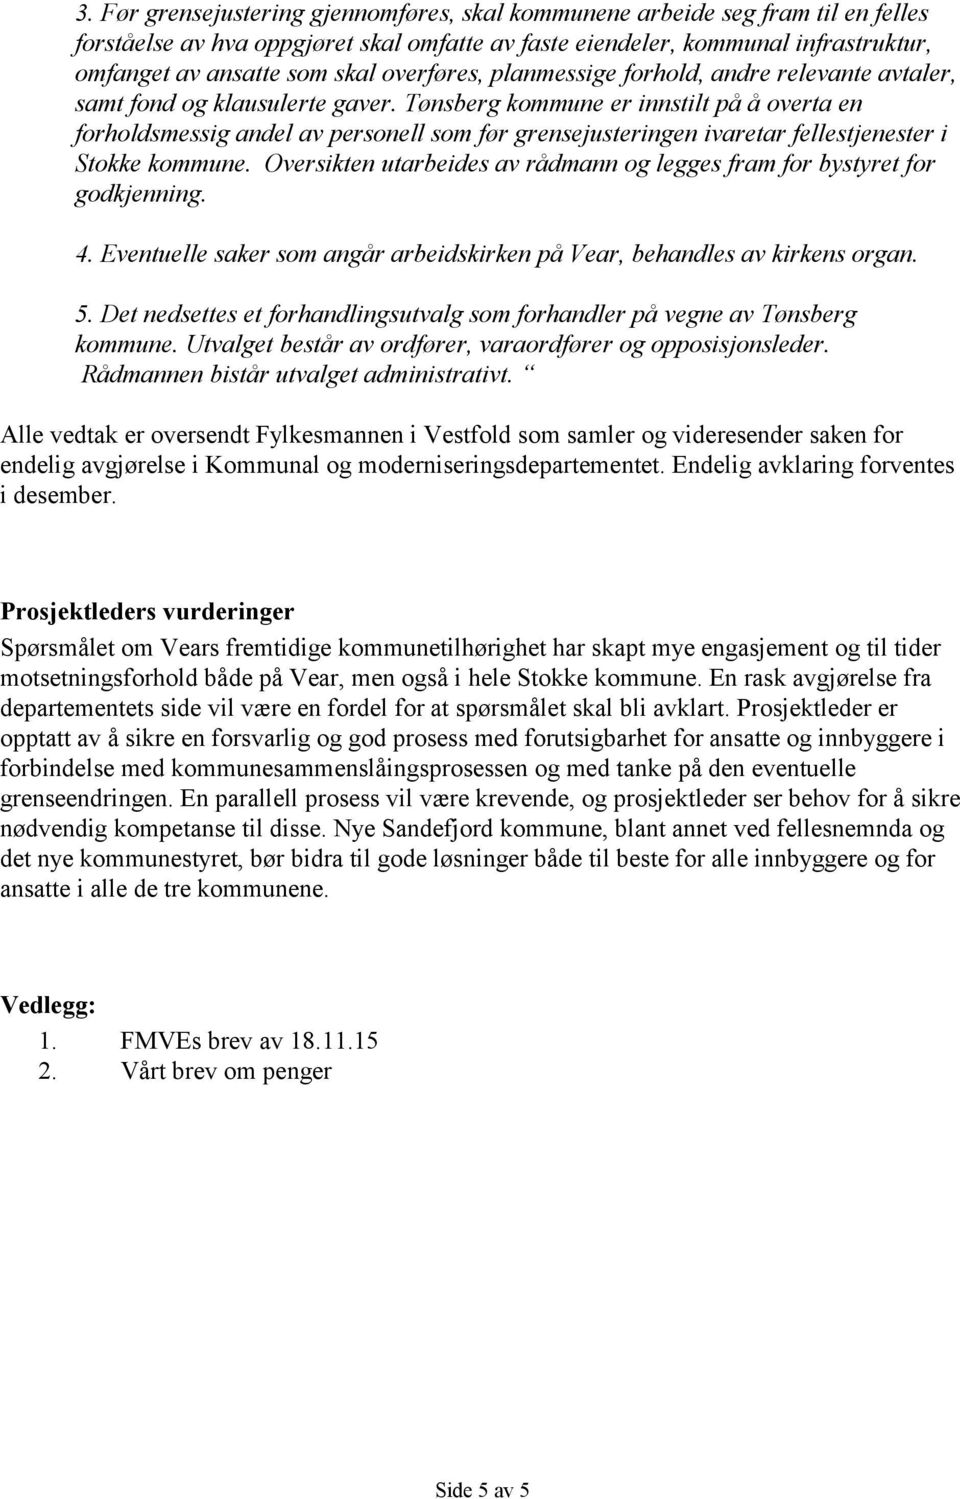 Tønsberg kommune er innstilt på å overta en forholdsmessig andel av personell som før grensejusteringen ivaretar fellestjenester i Stokke kommune.